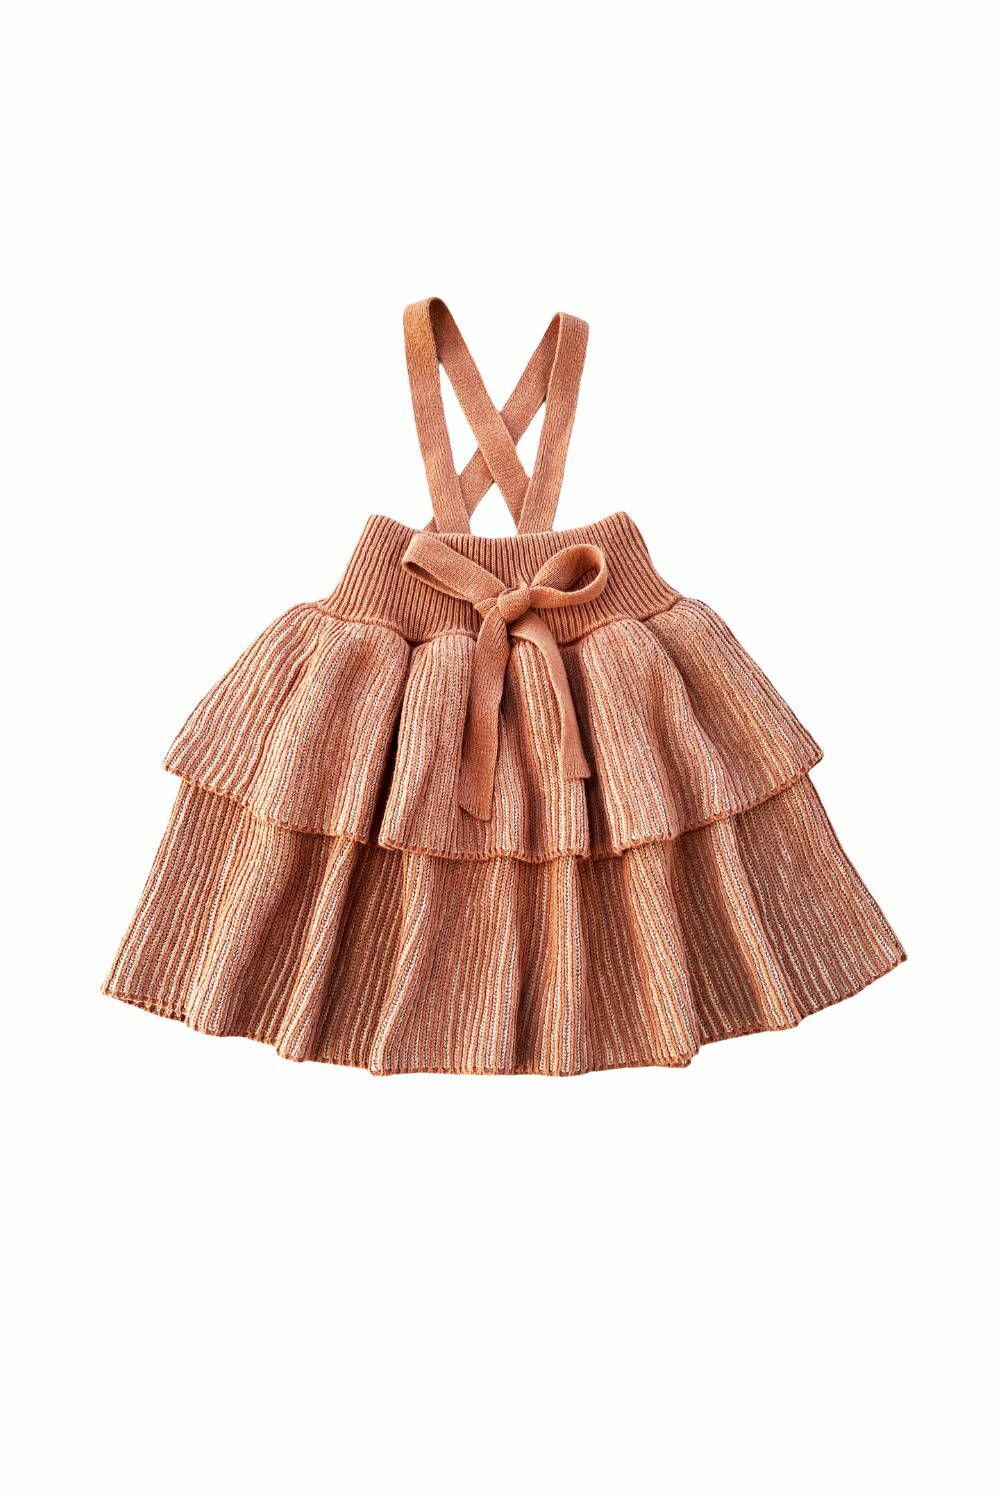 Mabli - Tirion Skirt Jasper 針織吊帶蛋糕裙 (復古磚色)